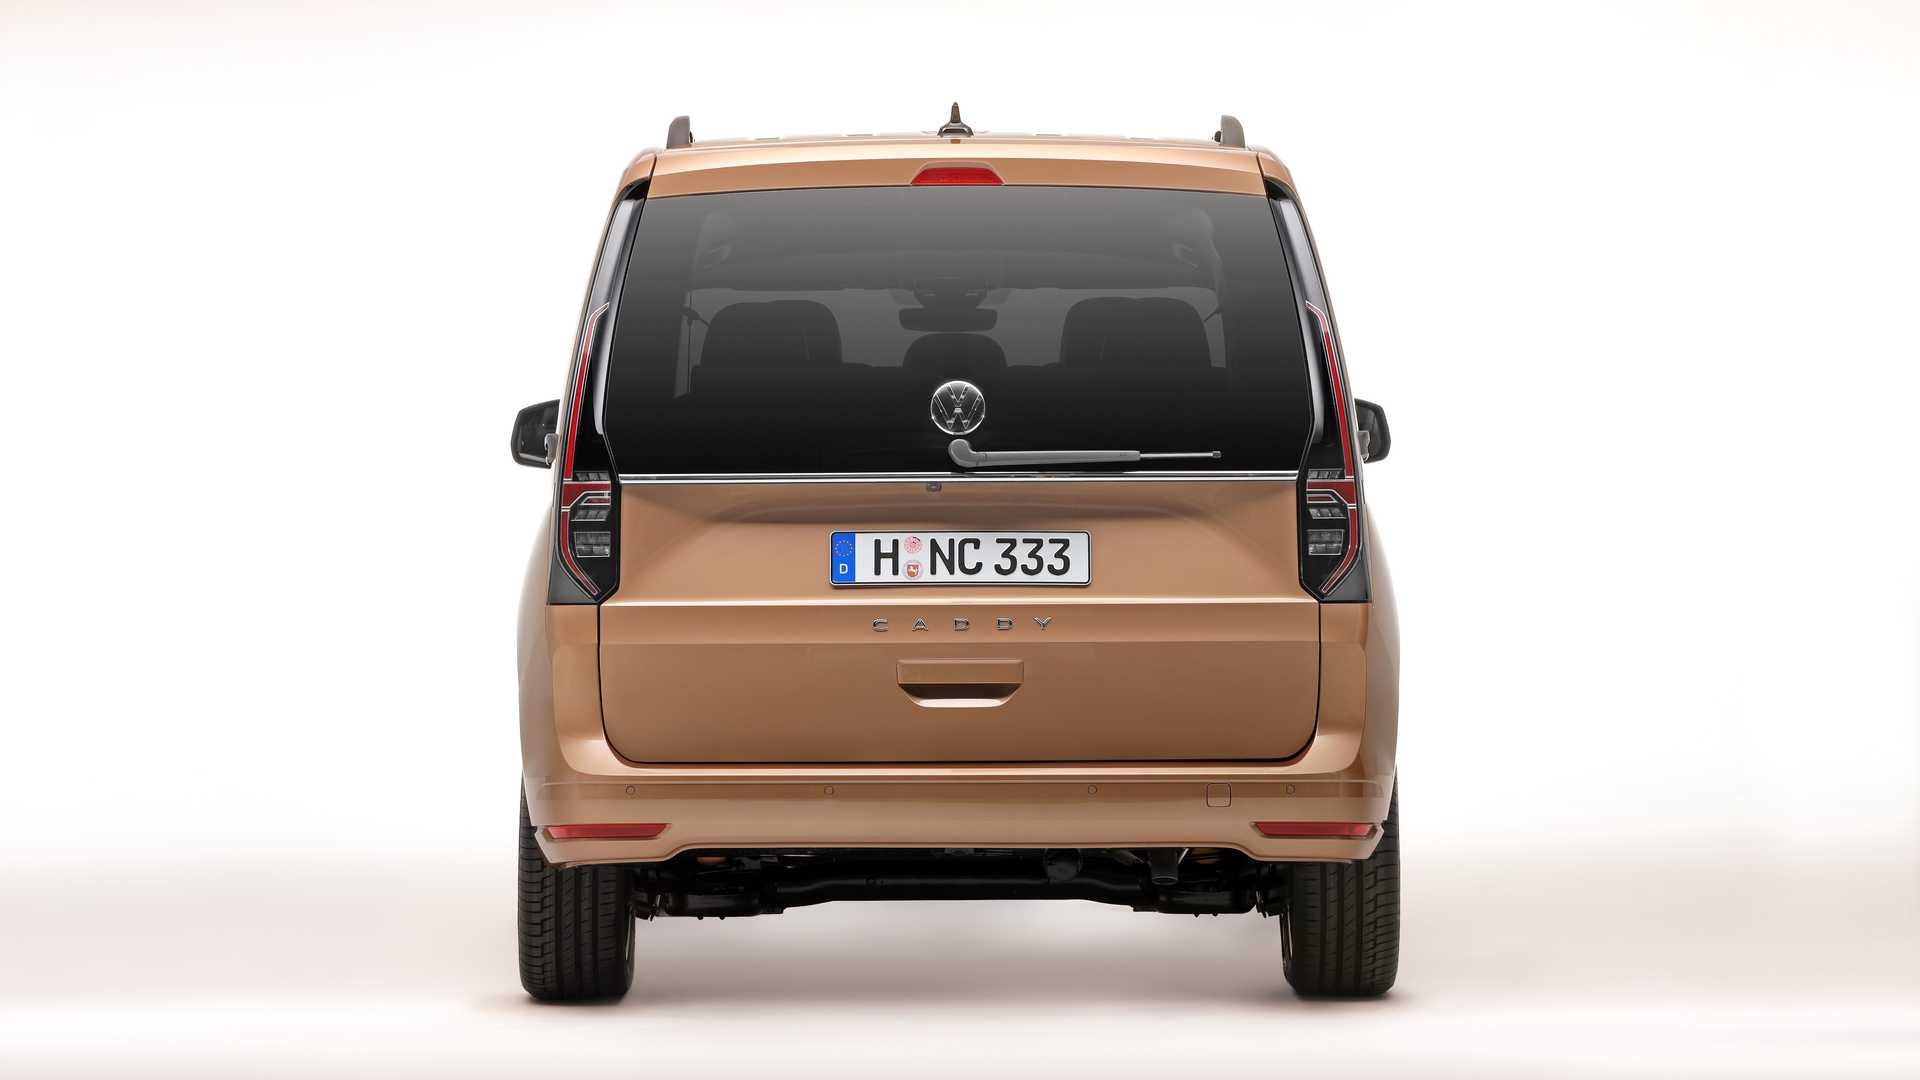 แพลตฟอร์มใหม่! Volkswagen Caddy 2020 รถตู้ไซส์เล็กเทคโนโลยีเพียบ